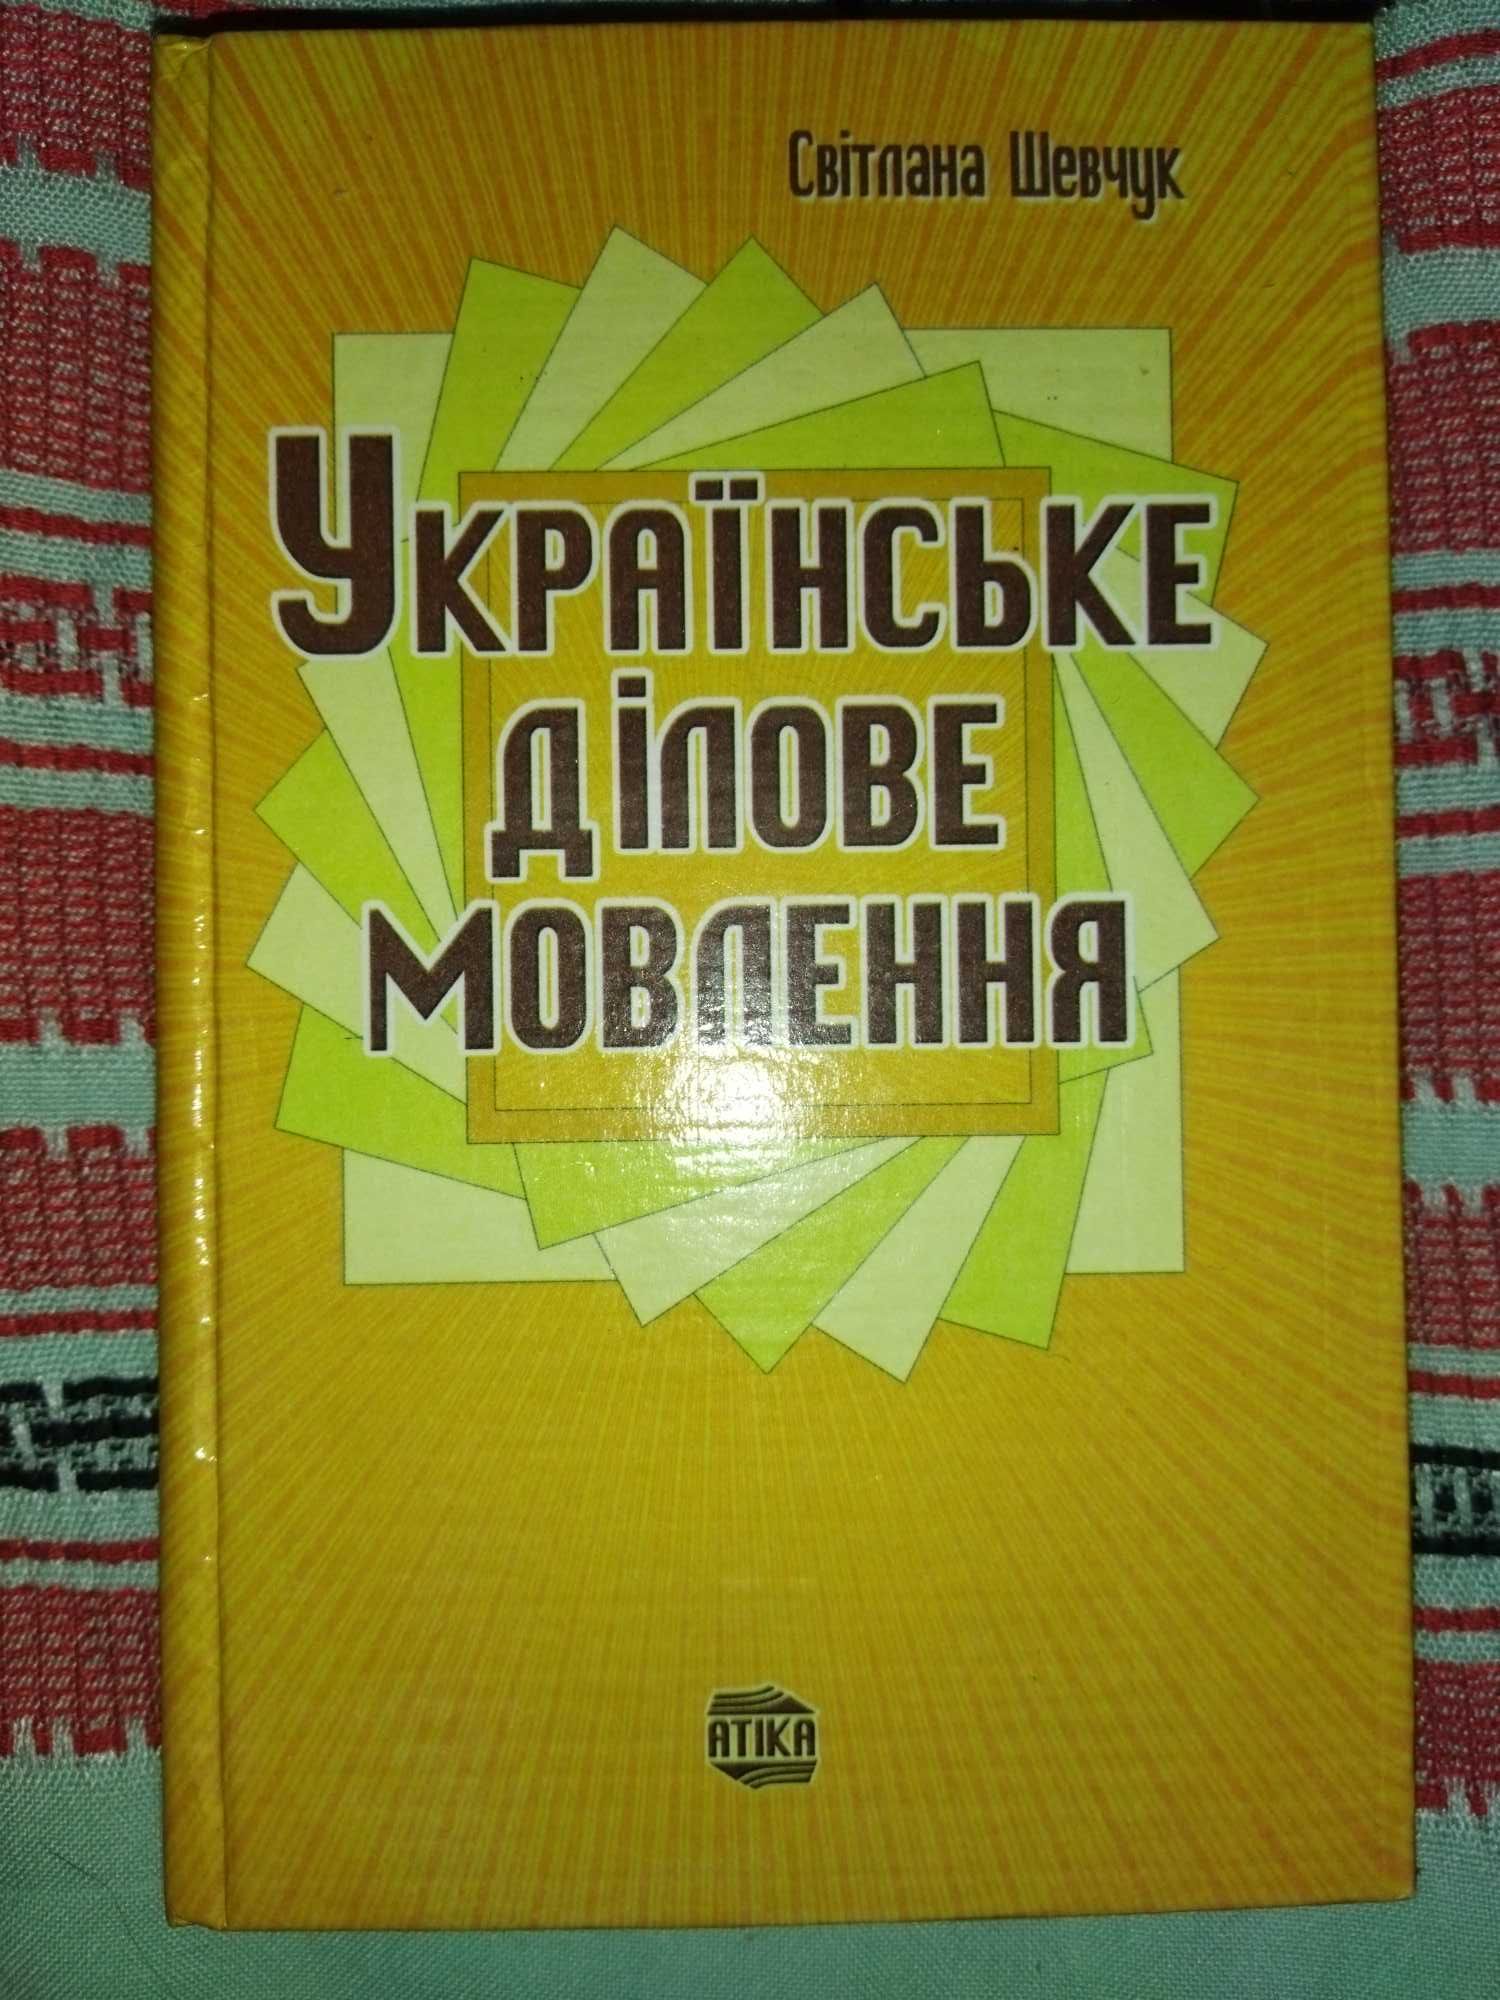 Укаїнське ділове мовлення книга